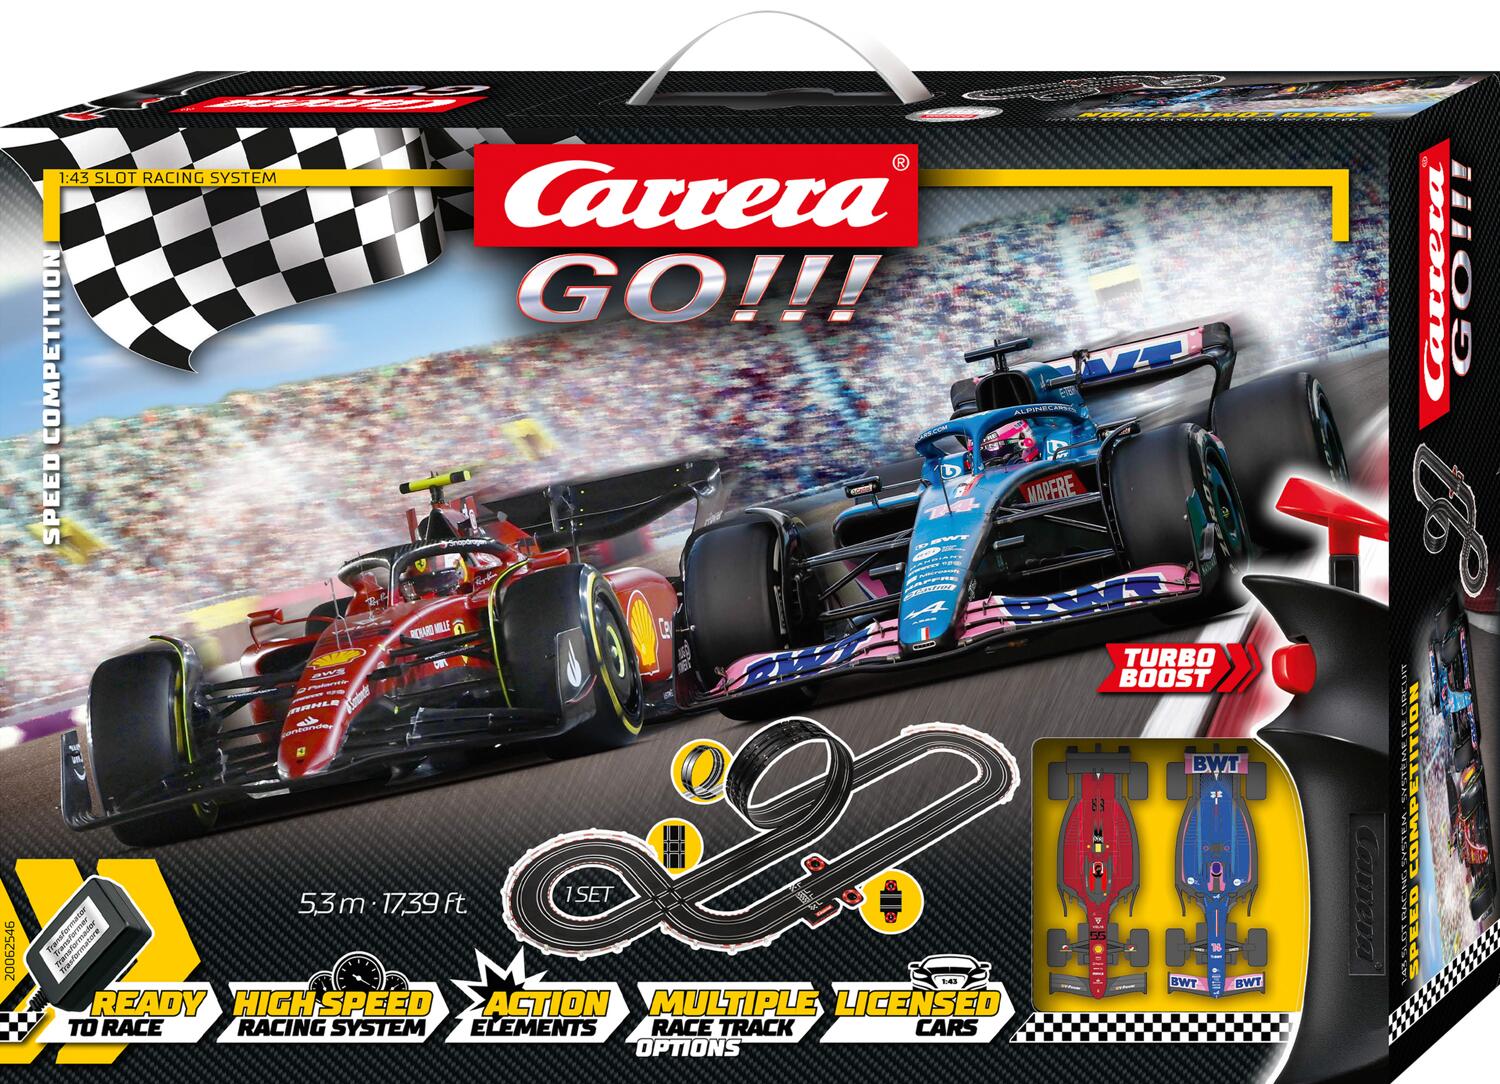 Pièces & accessoires pour Carrera Go Build Race Set